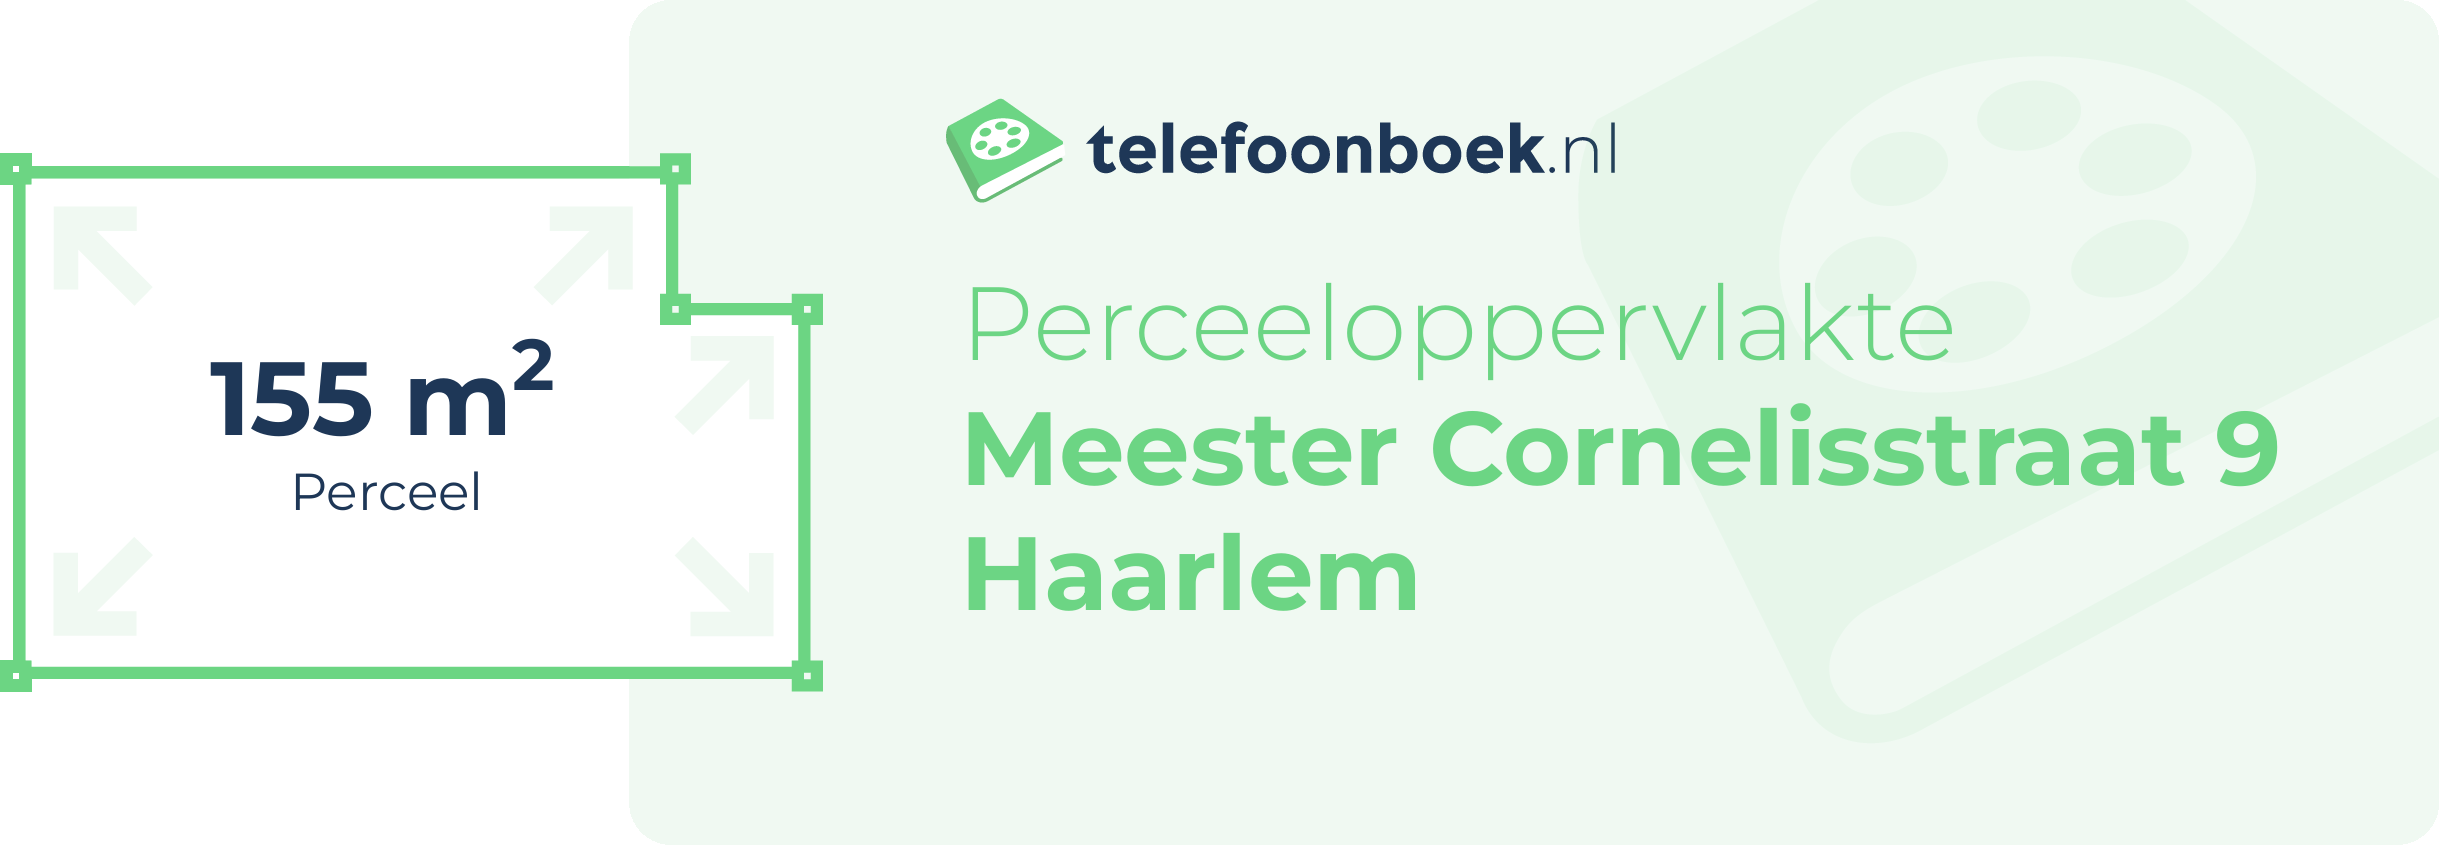 Perceeloppervlakte Meester Cornelisstraat 9 Haarlem